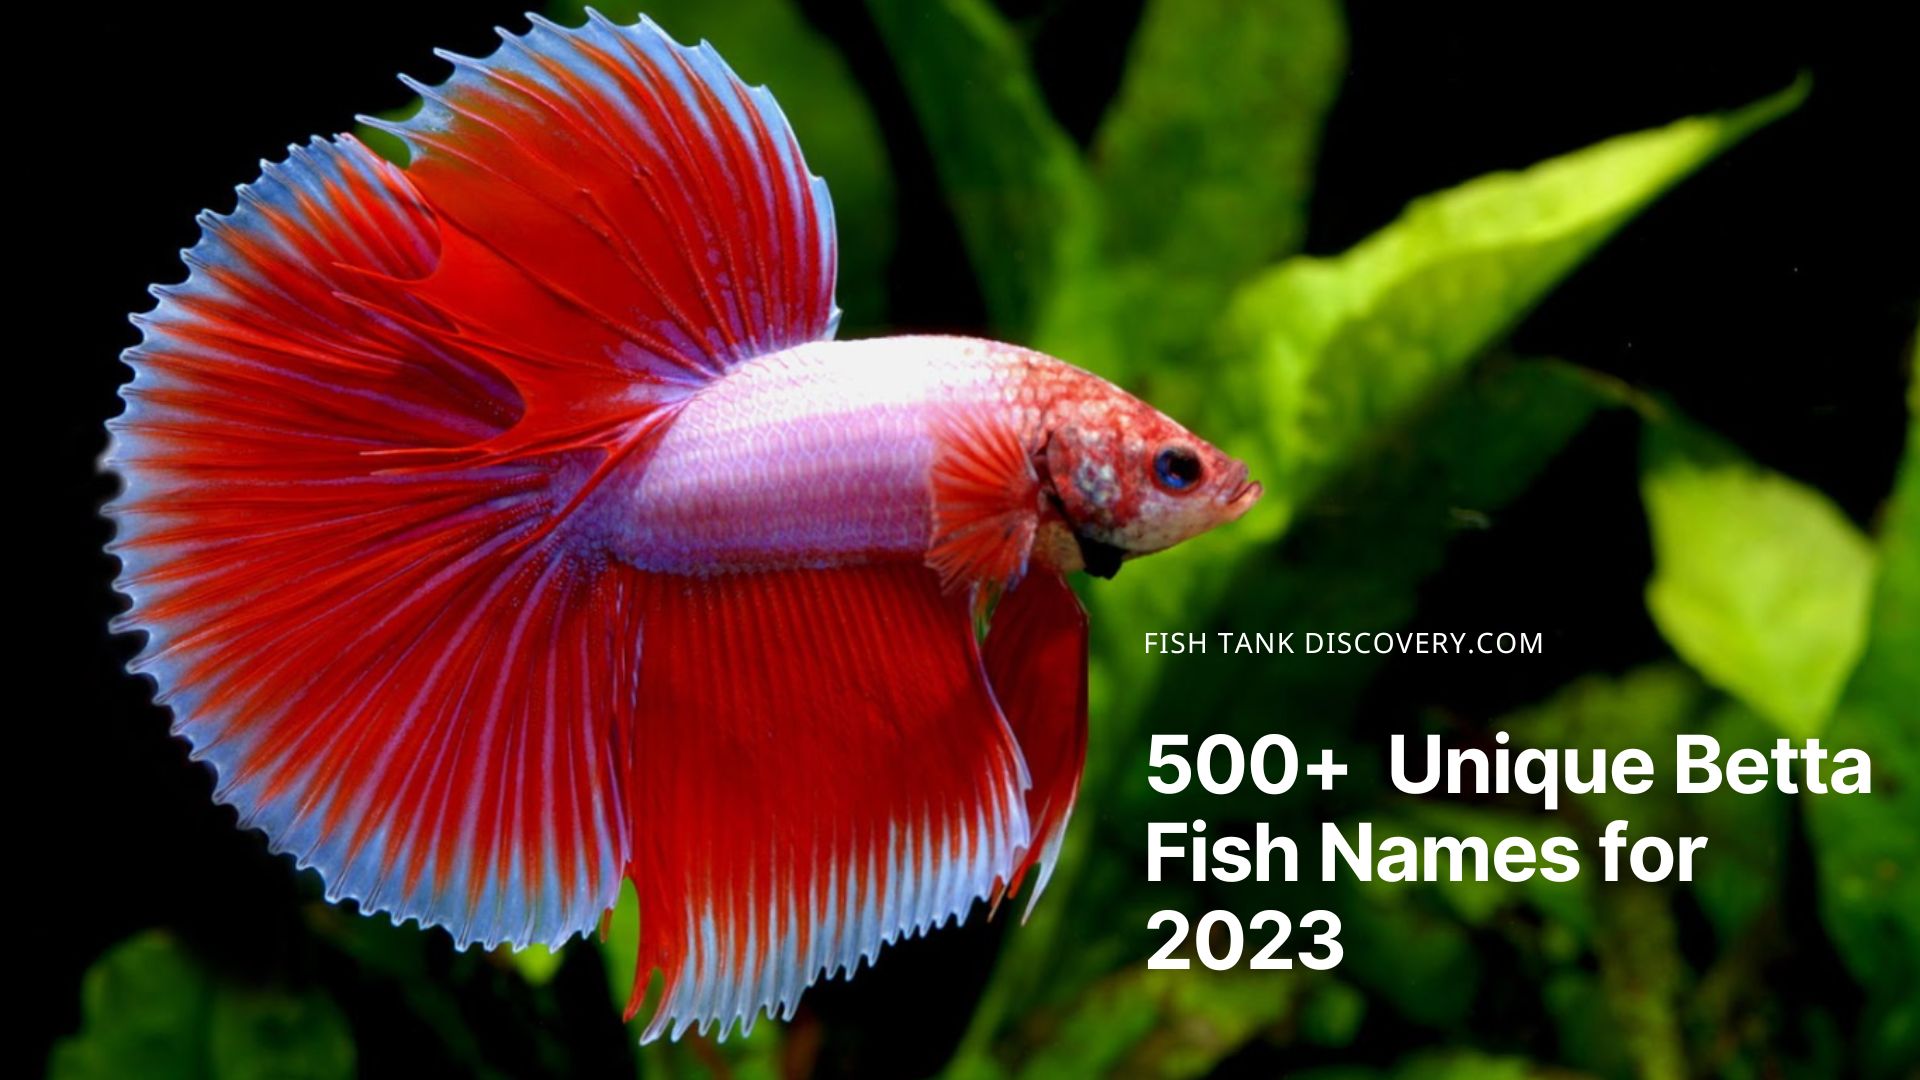 Unique Betta Fish Names For 2023 